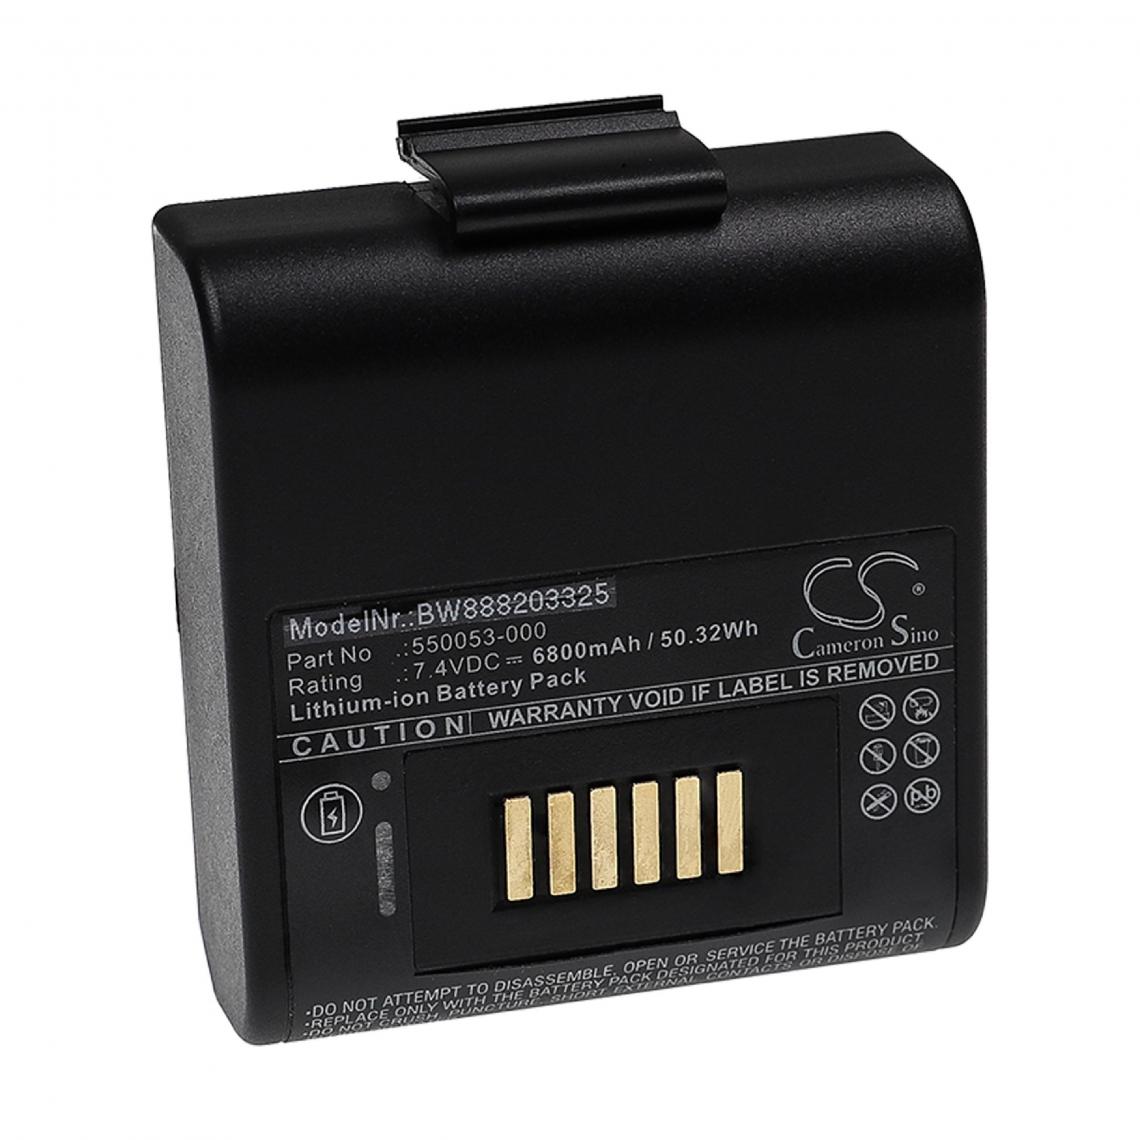 Vhbw - vhbw Batterie compatible avec Honeywell RP4 imprimante, scanner, imprimante d'étiquettes (6800mAh, 7,4V, Li-ion) - Imprimante Jet d'encre